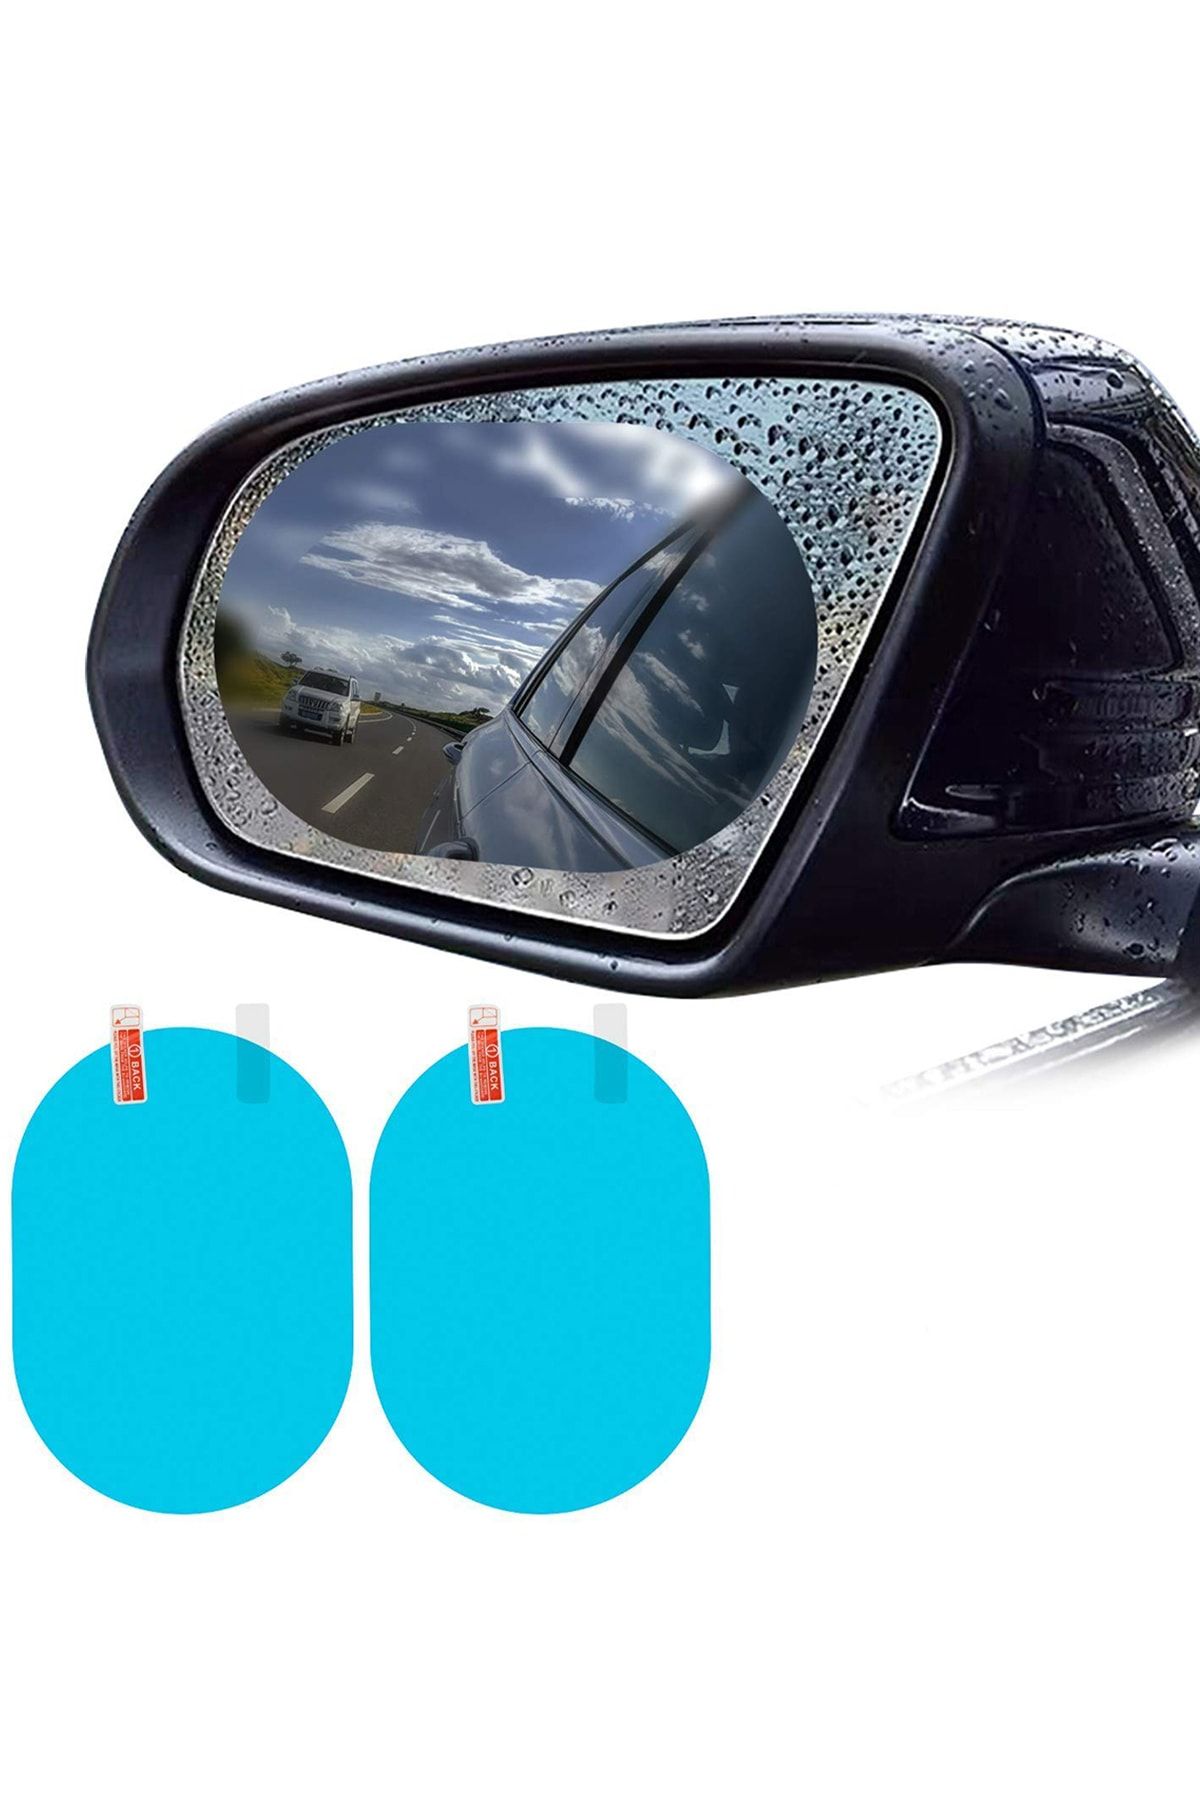 NOYİSKA Vw Reno Pejo Uyumlu Oto Dış Ayna Yağmur Cam Film Araba Yan Dikiz Aynası Filmi Buğu Önleyici